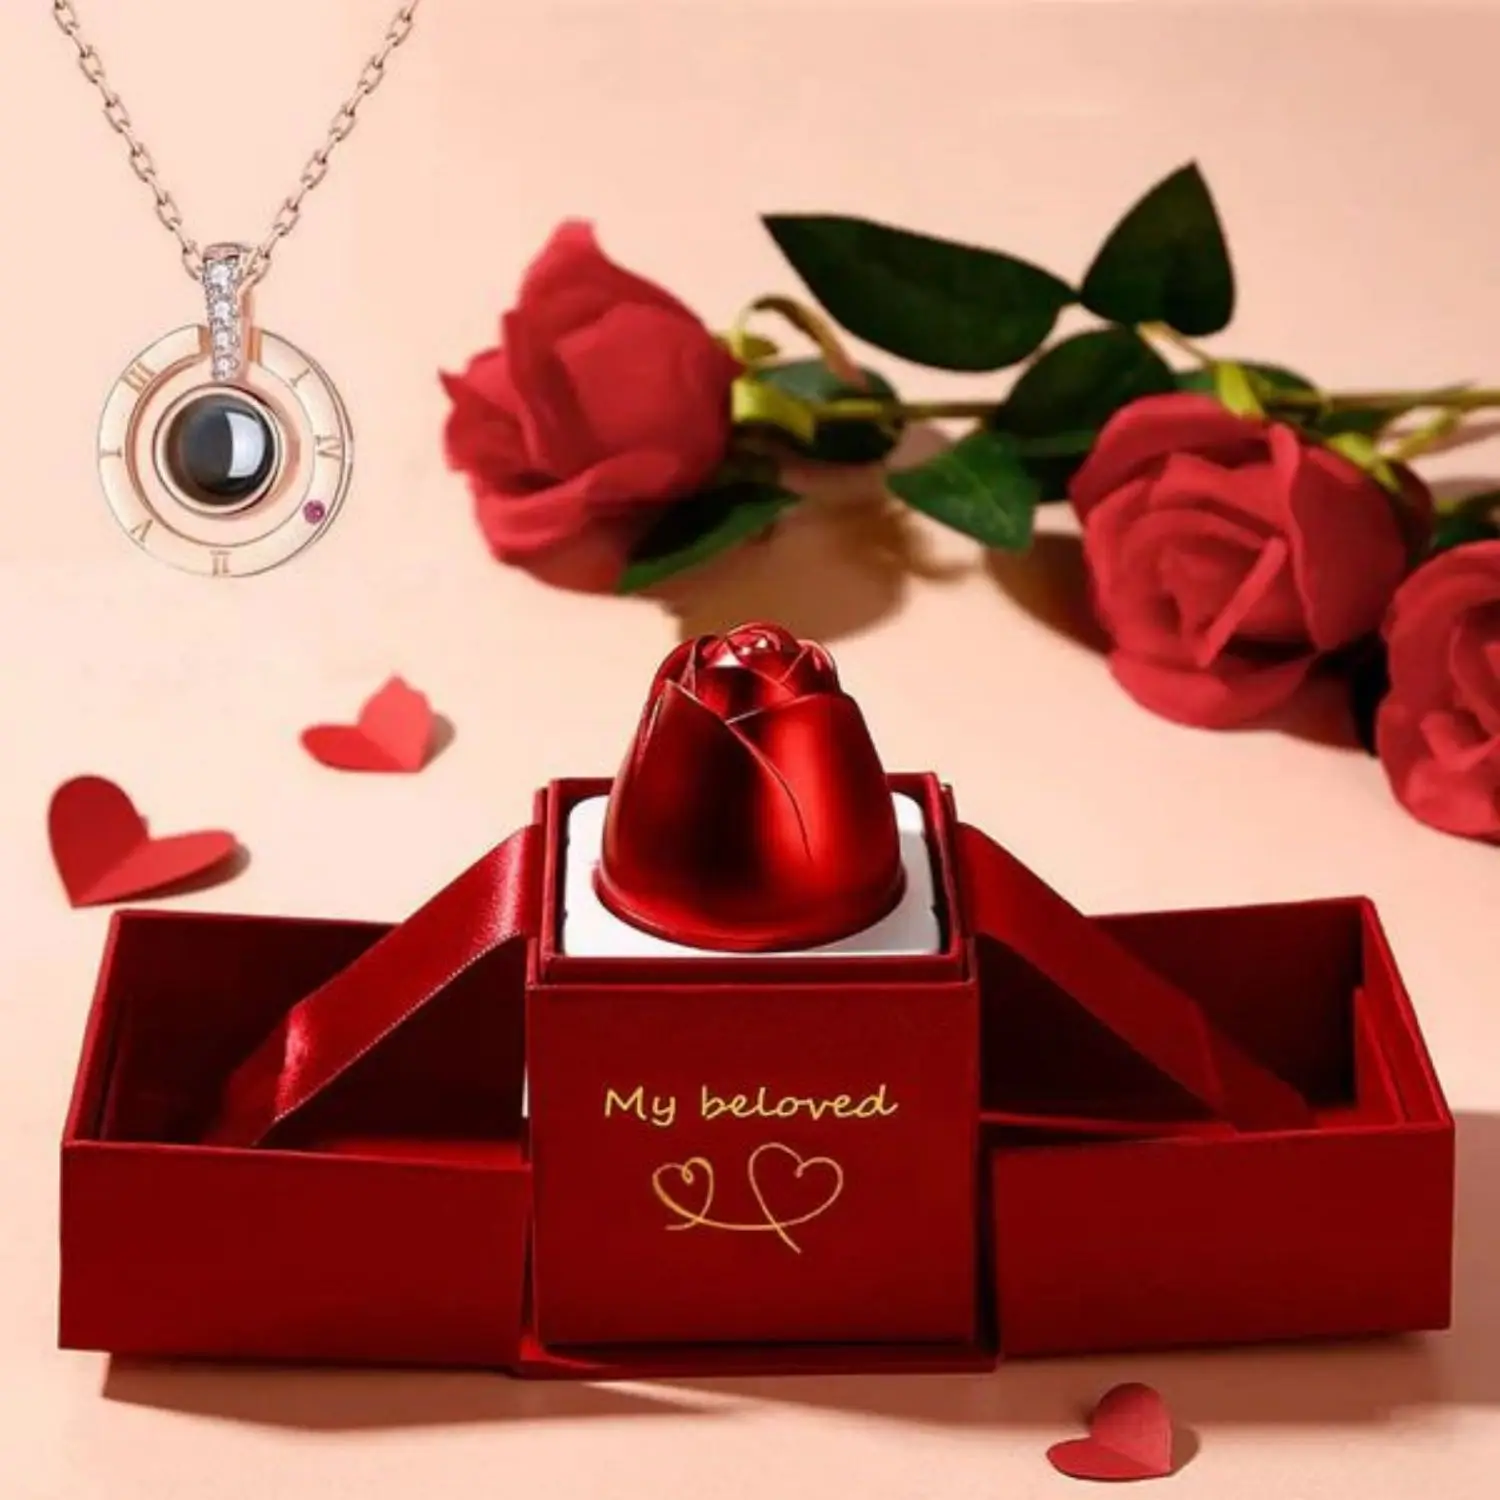 

Подарочная металлическая коробка для ювелирных изделий, подвеска в виде розы для подарка на День святого Валентина, День матери, свадьбу, годовщину, Рождество, ожерелье для любимой девушки